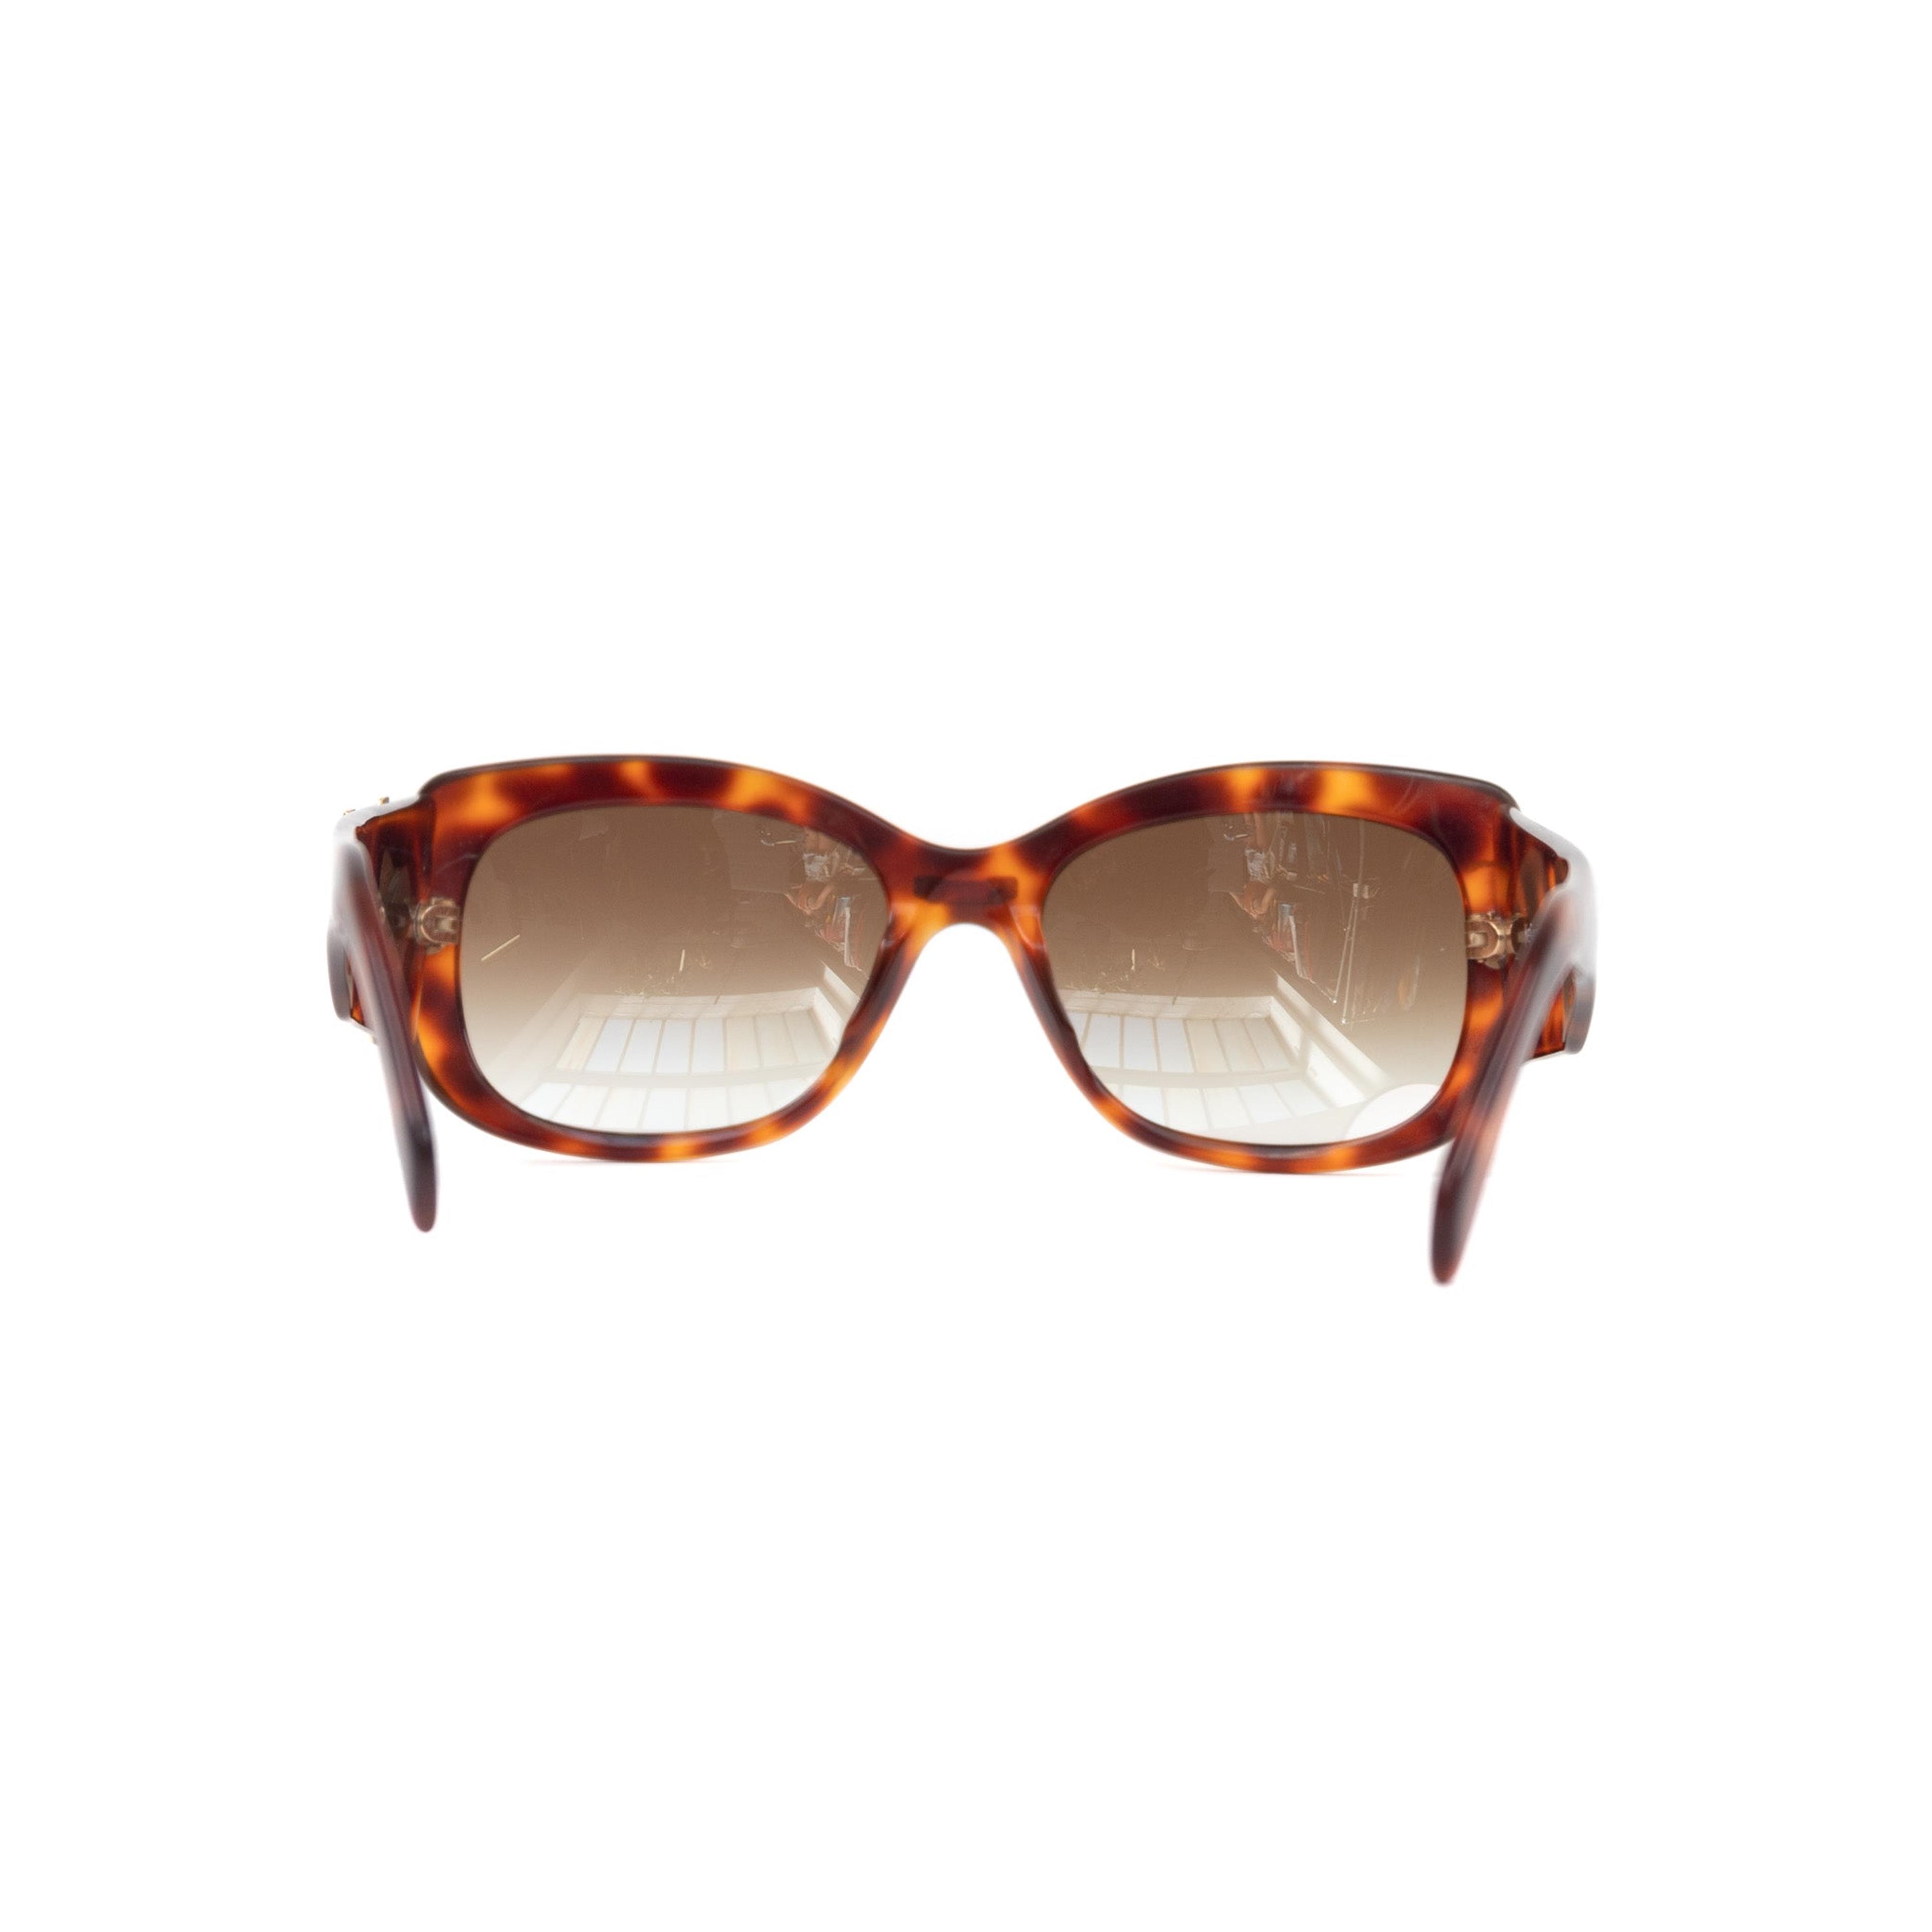 Alternate View 5 of Yves Saint Laurent Tortoise Sunglasses